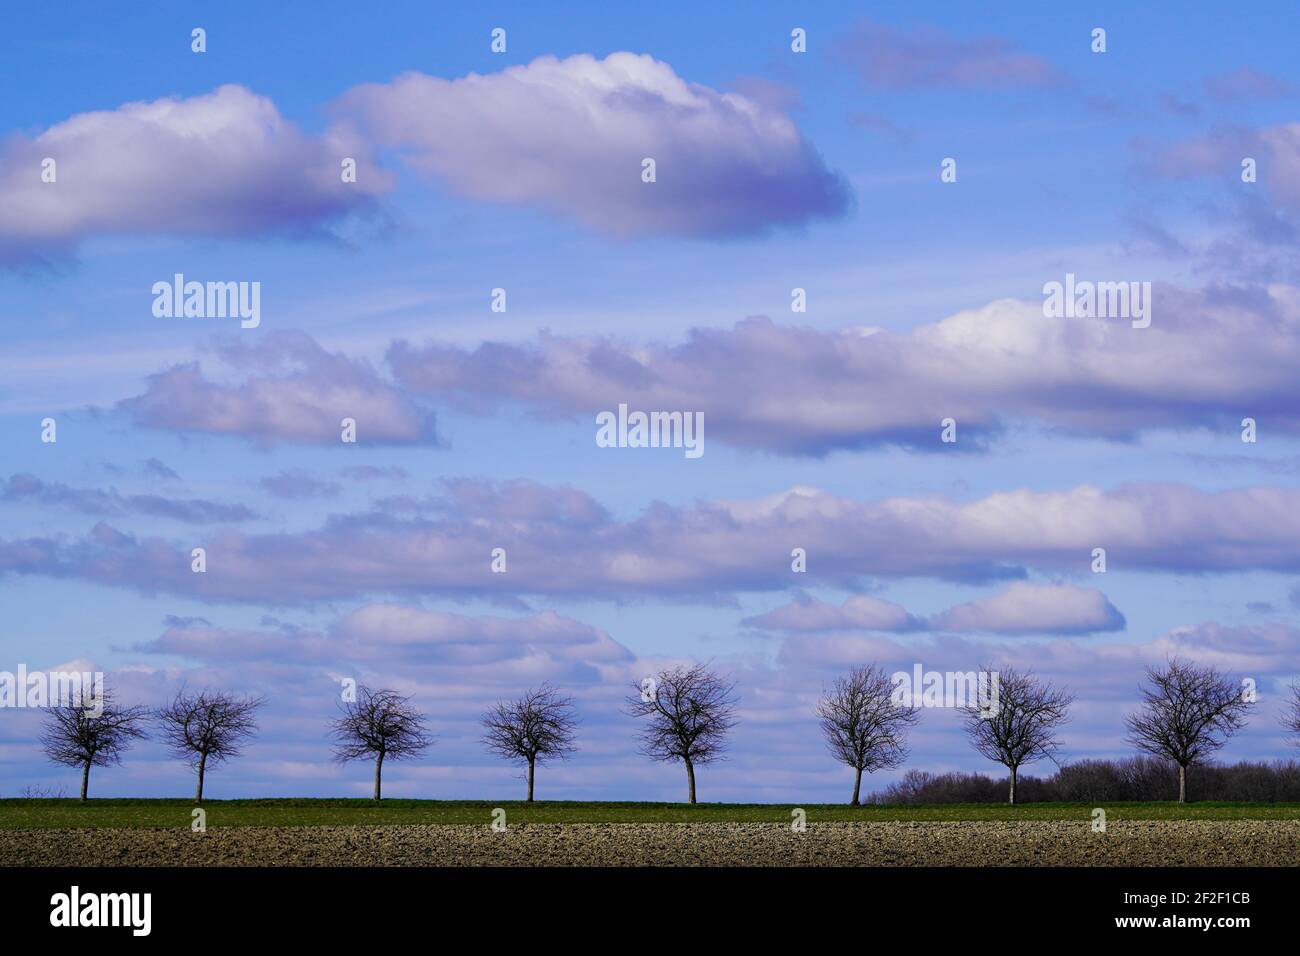 Una linea di alberi in inverno. Cielo nuvoloso con nuvole volanti Foto Stock